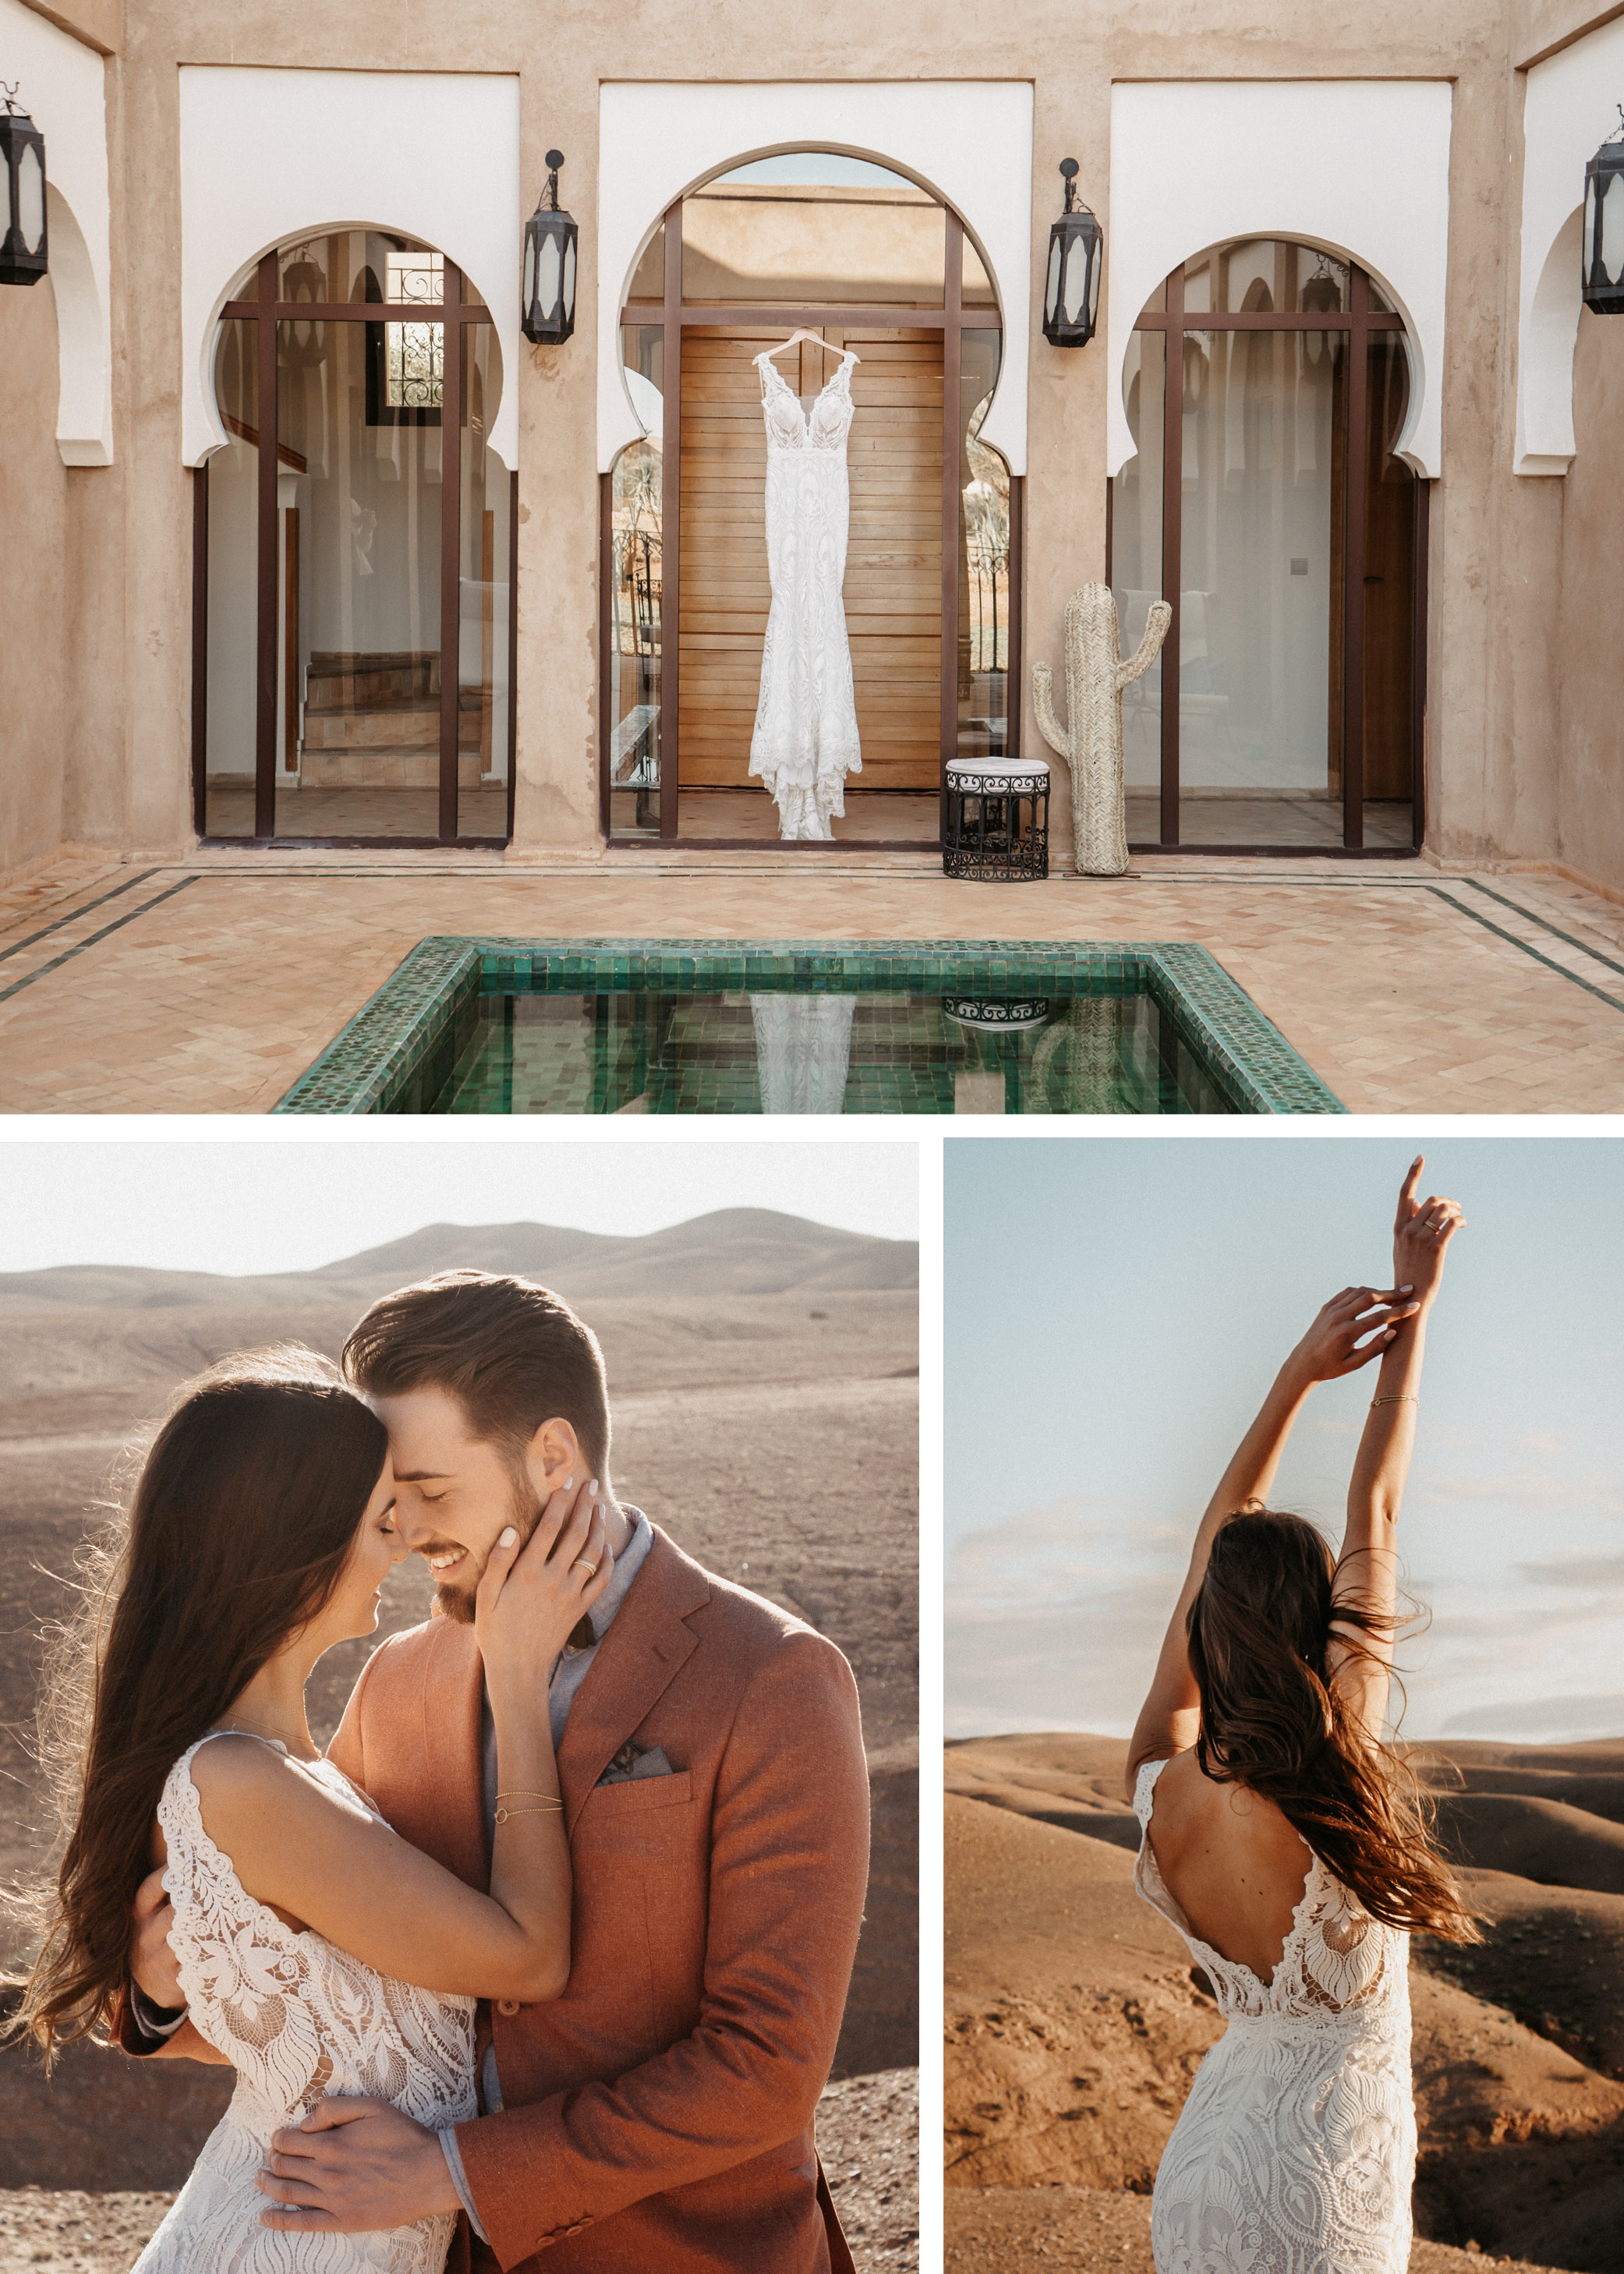 Man heiraten in zum marokko was papiere braucht für Standesamtliche Trauung: